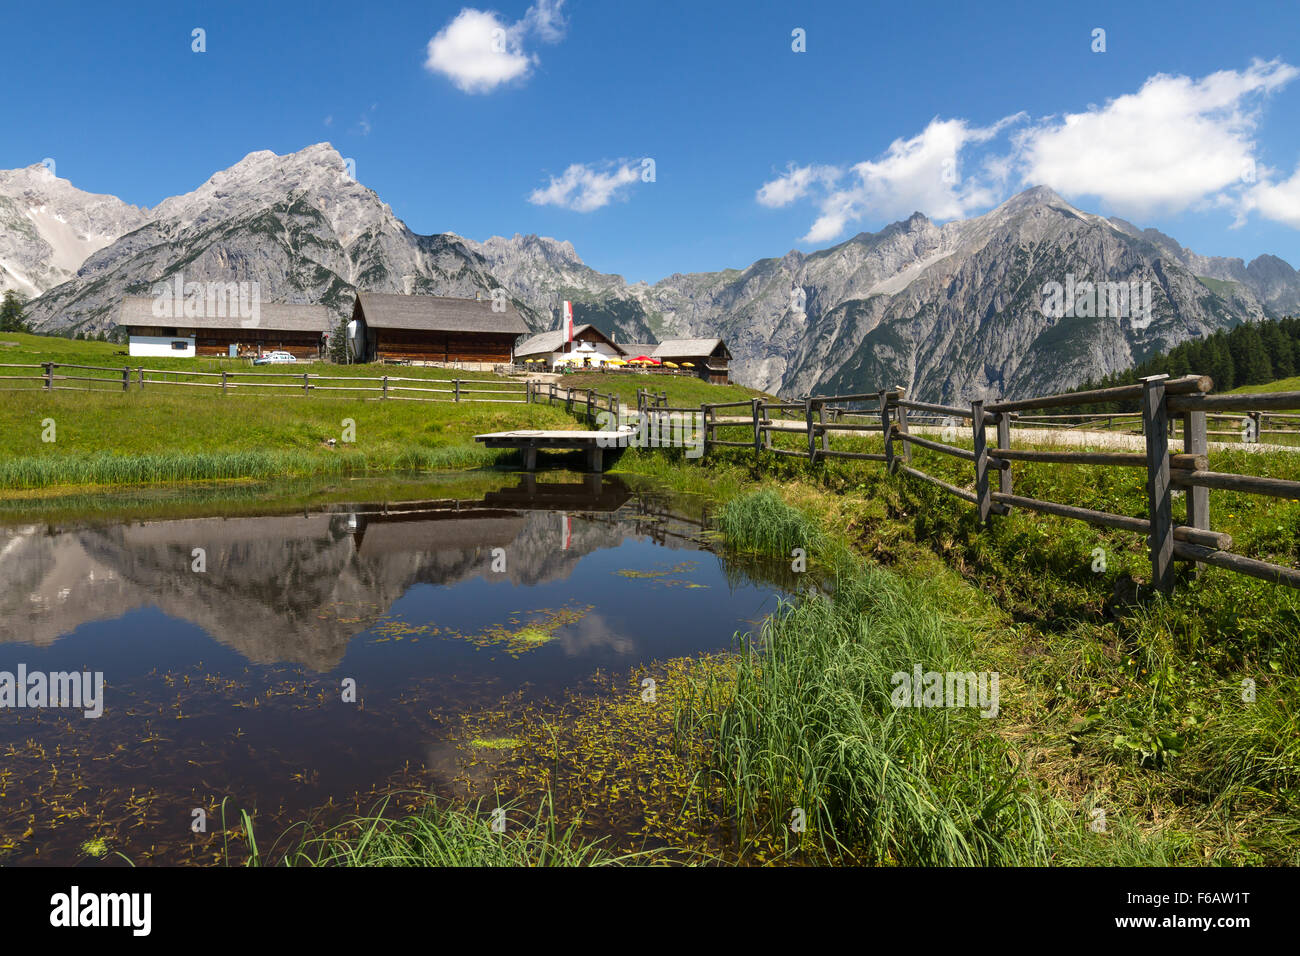 Escena rural en Alpes con un lago en el primer plano. Austria, Walderalm. Foto de stock